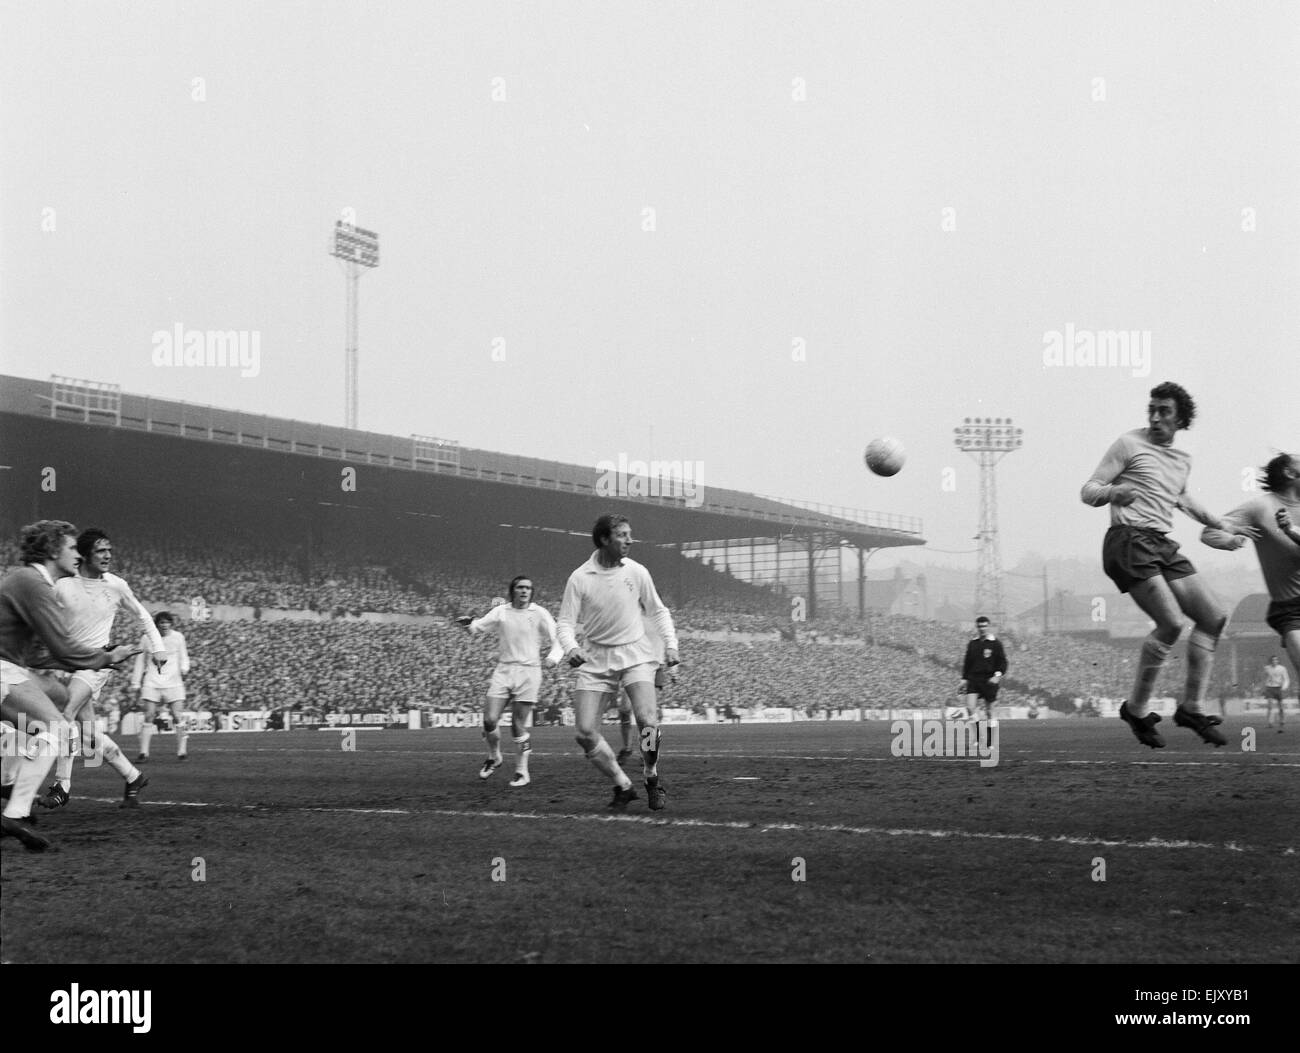 FA Cup Viertel Finale an der Elland Road. Leeds United 2 V Tottenham Hotspur 1. Sporen vorwärts Martin Chivers von Leeds Verteidiger Jack Charlton beobachtet. 18. März 1972. Stockfoto